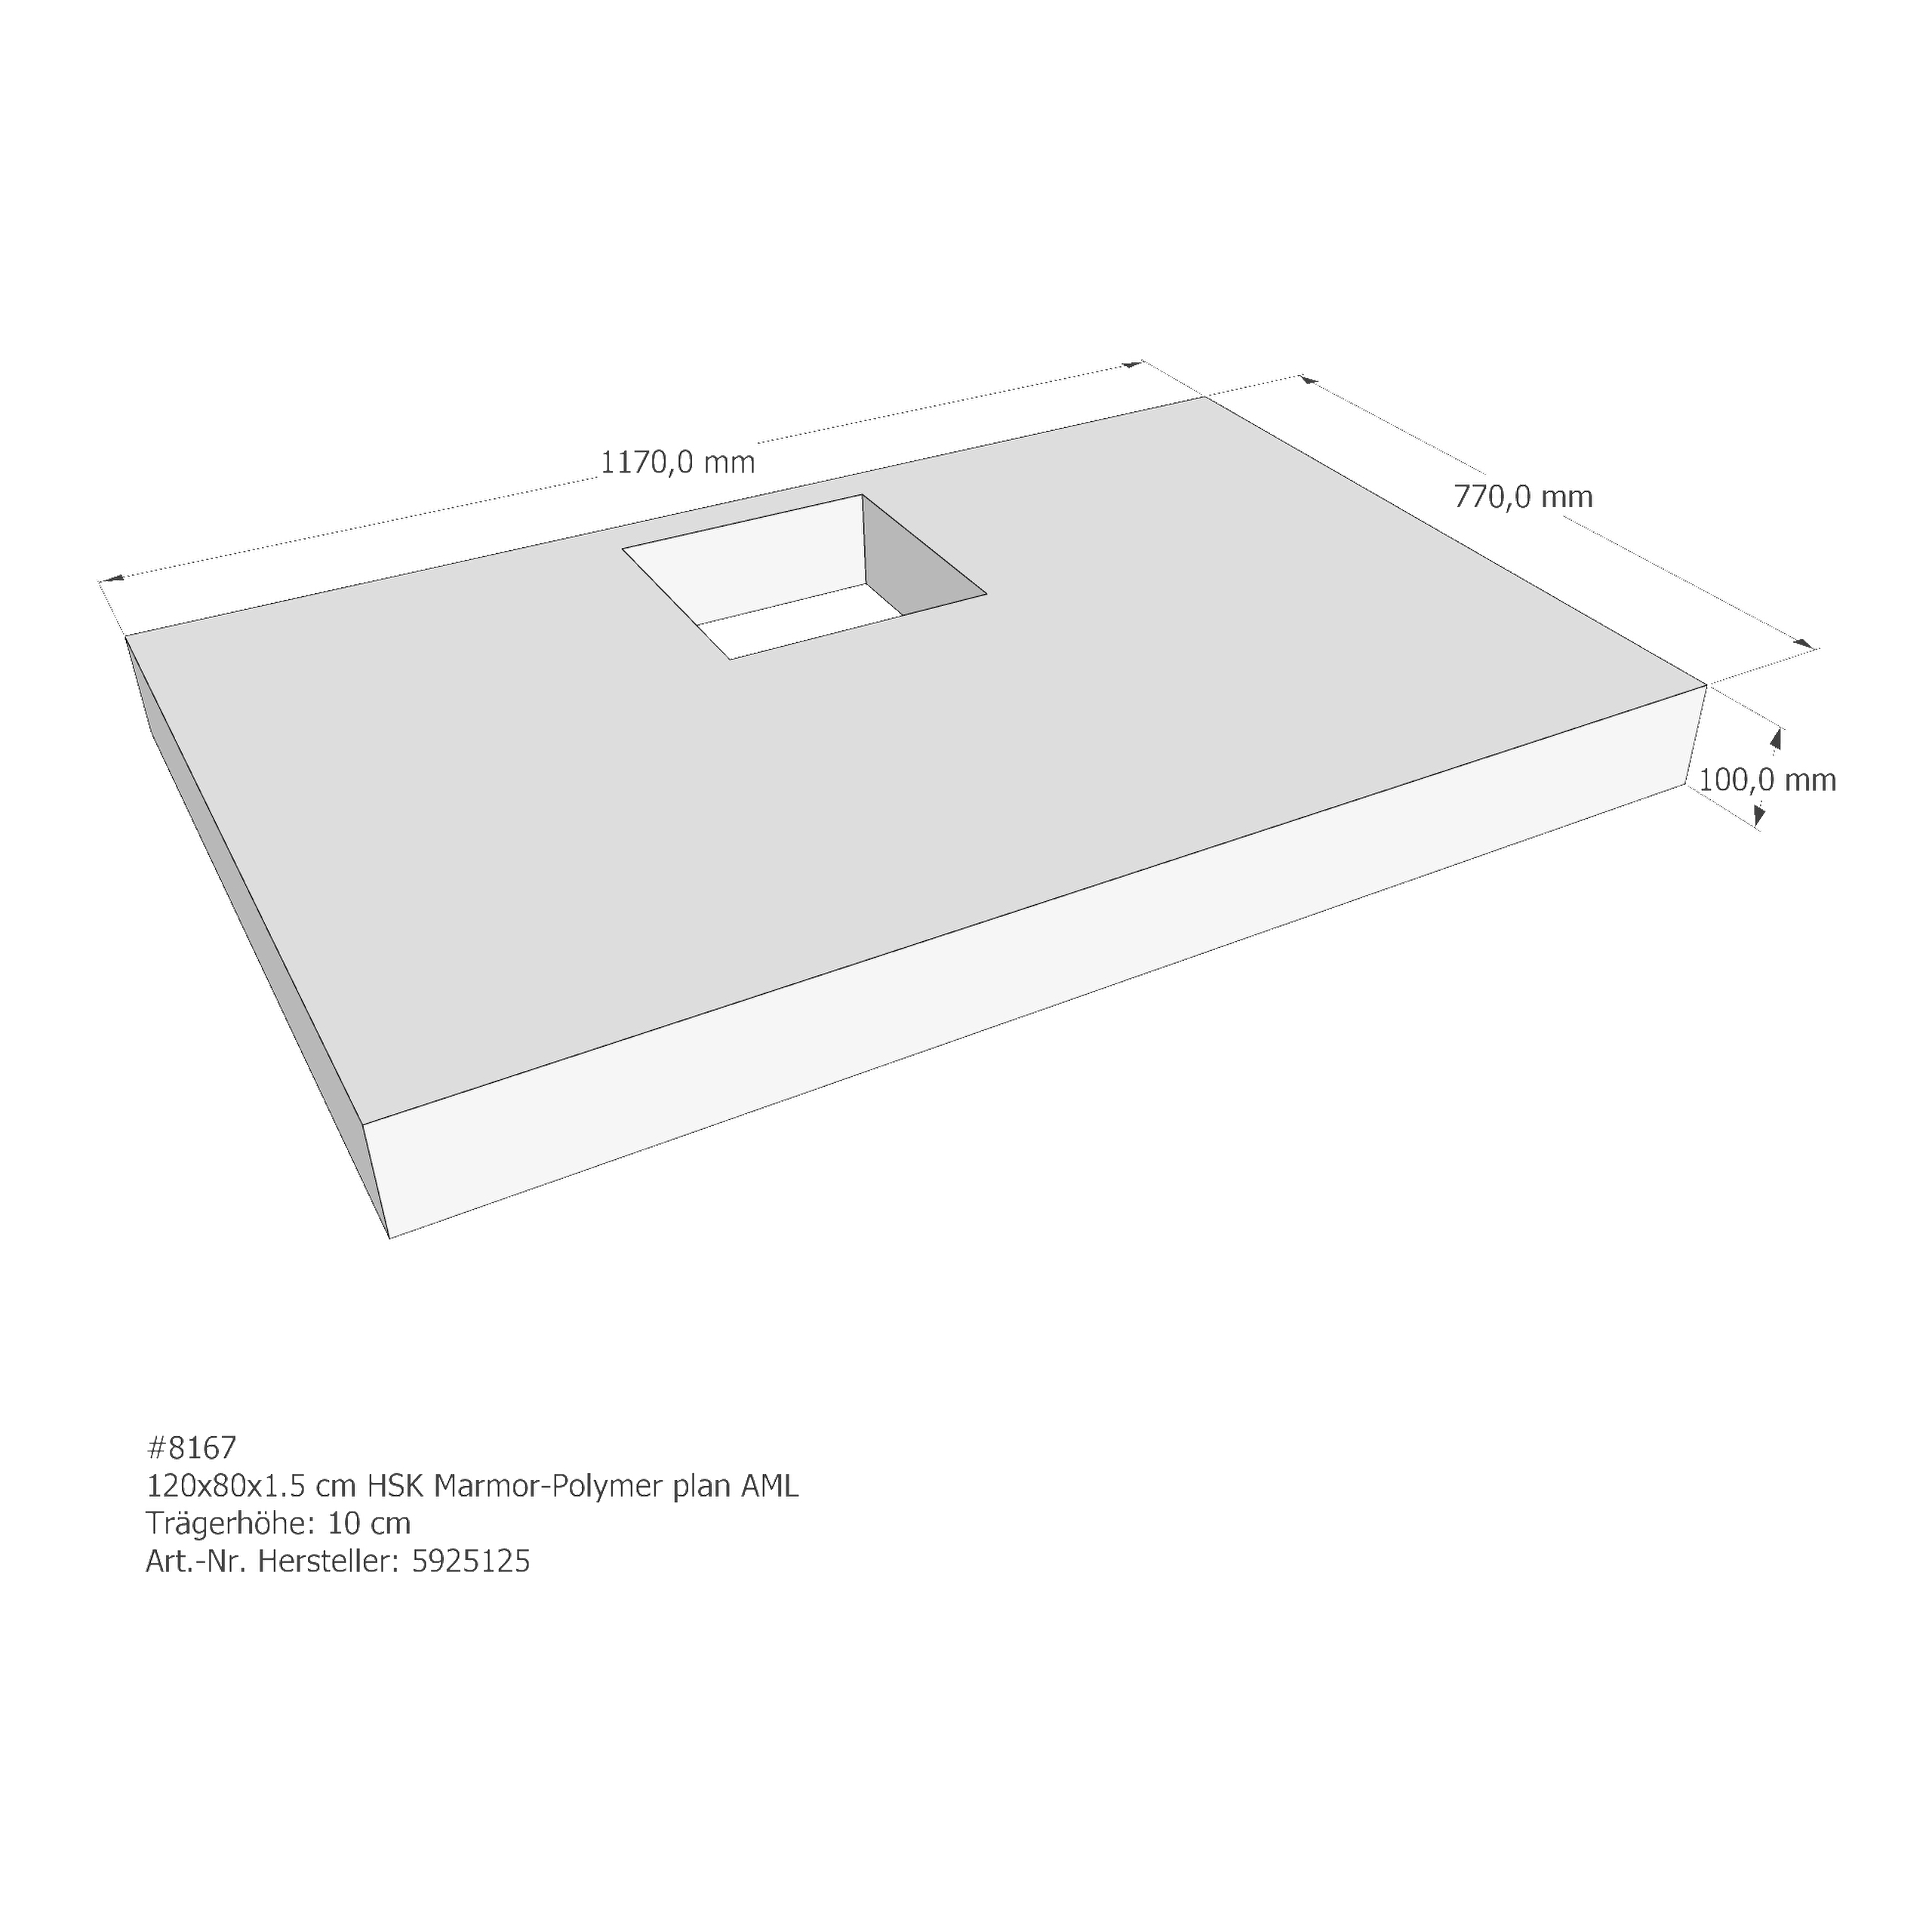 Duschwannenträger HSK Marmor-Polymer plan 120x80x1,5 cm AML